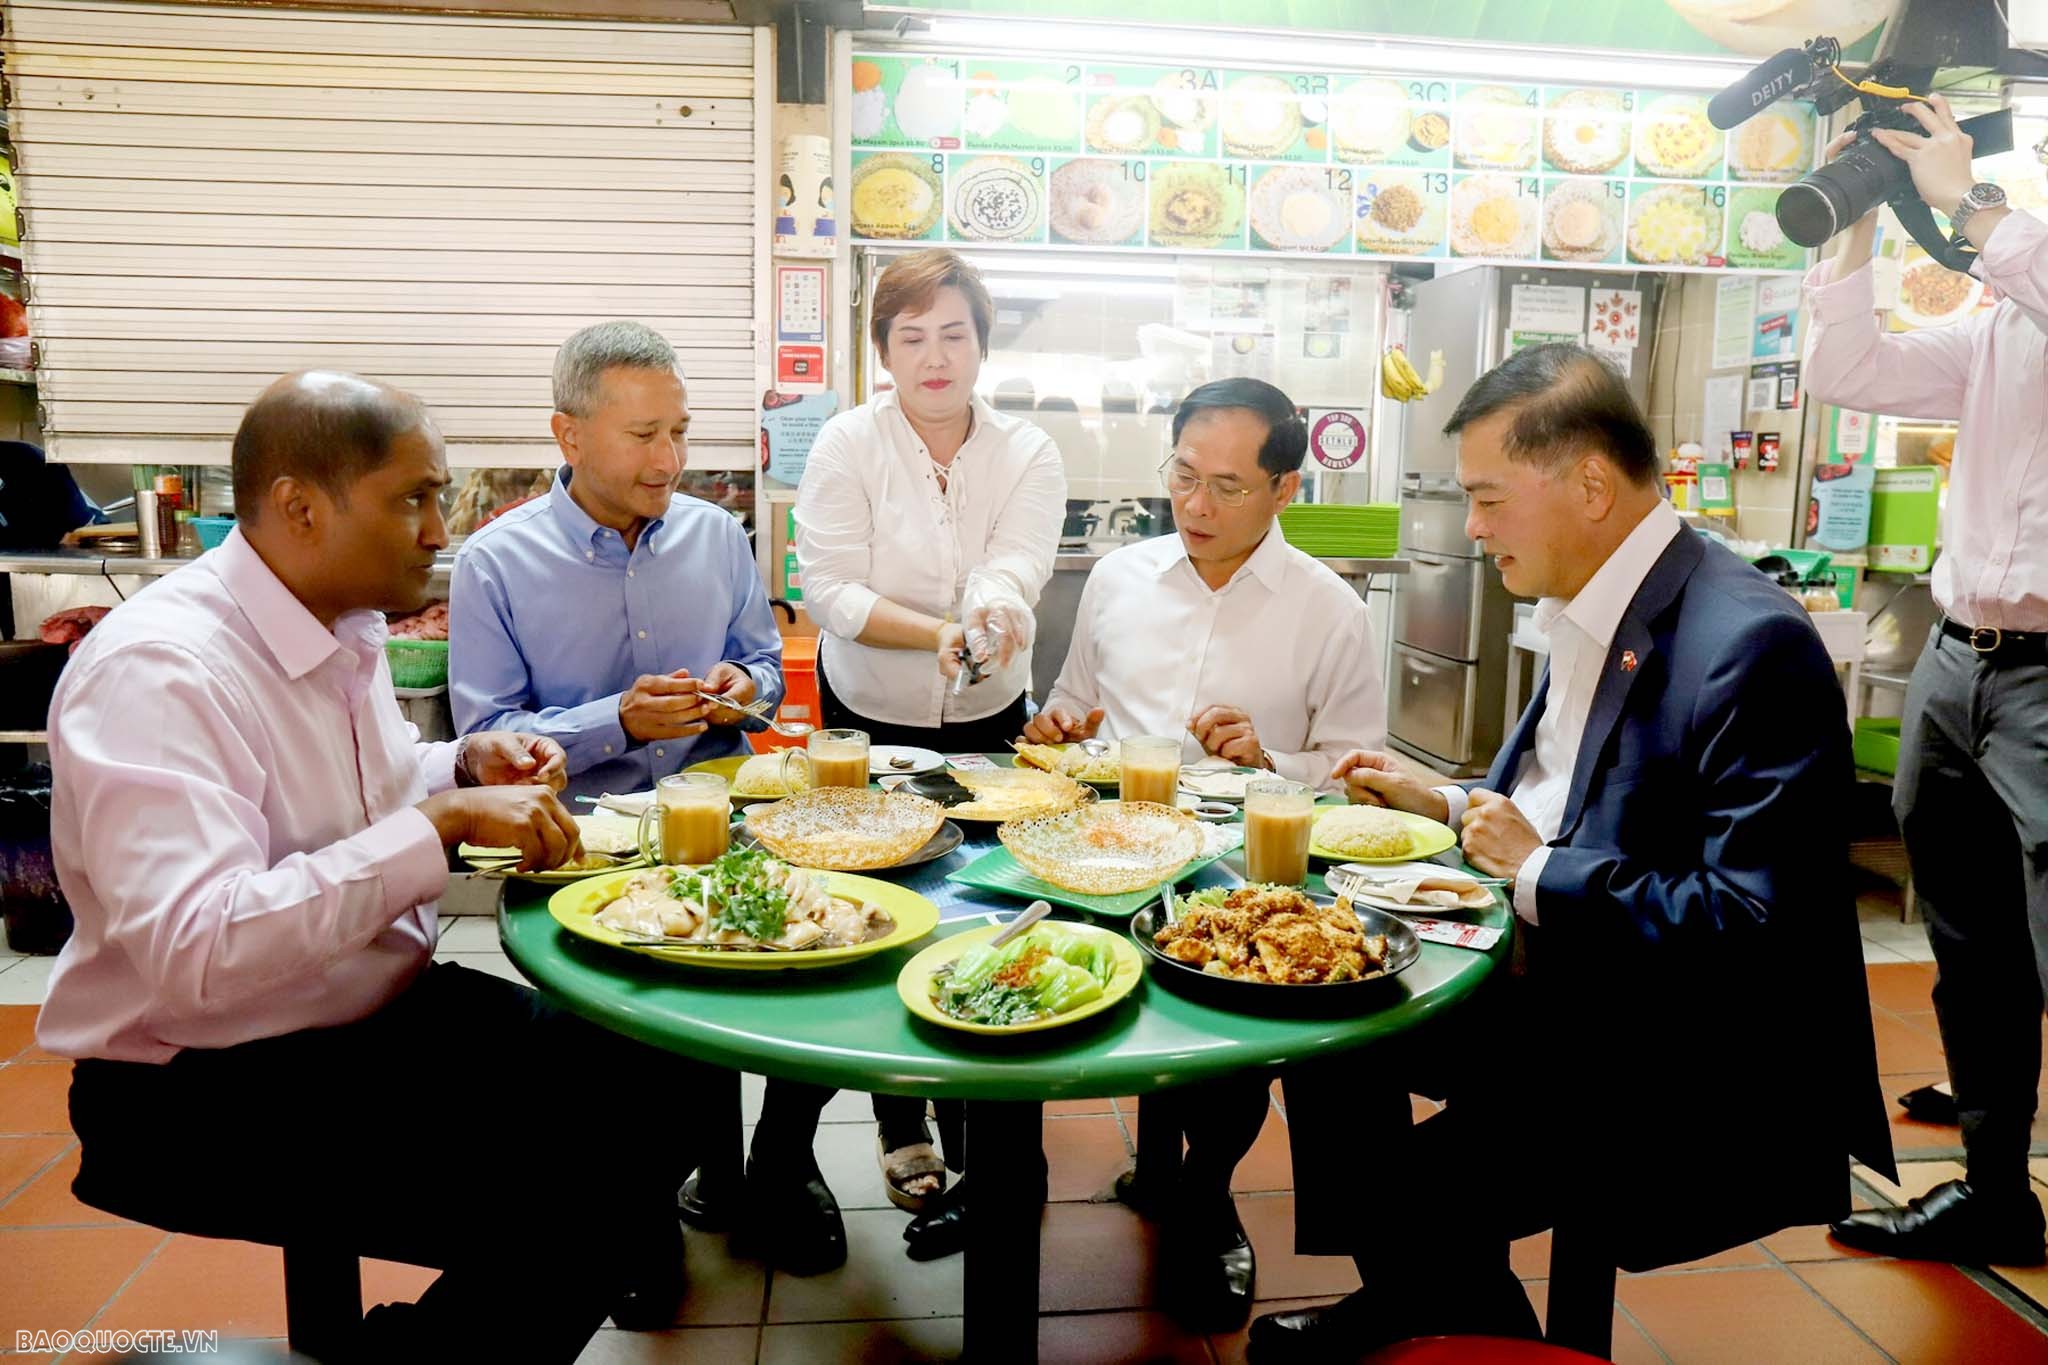 Bộ trưởng Ngoại giao Bùi Thanh Sơn tham quan trung tâm văn hóa ẩm thực đường phố Singapore và dâng hoa tại Tượng đài Chủ tịch Hồ Chí Minh